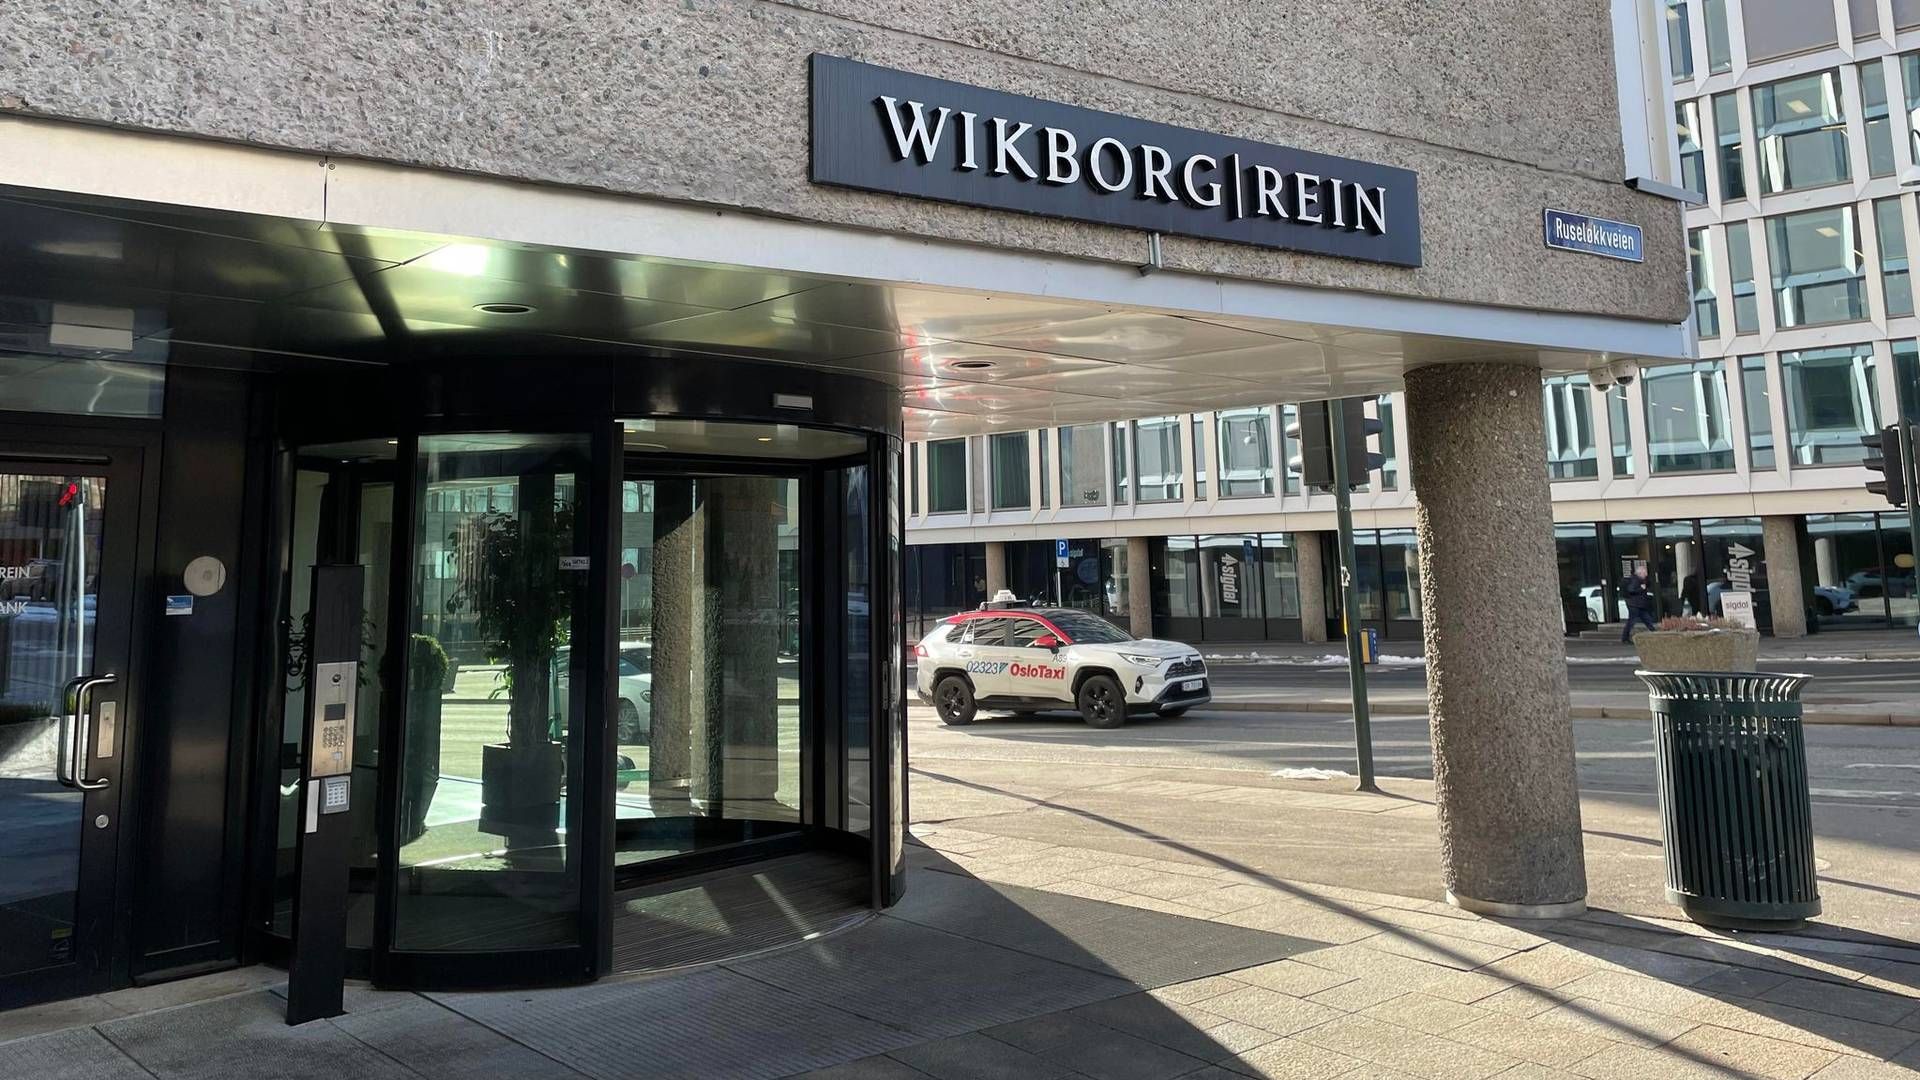 SAMARBEIDER: Wikborg Rein utfører oppdraget i samarbeid med et britisk konsulentselskap. | Foto: Stian Olsen/AdvokatWatch